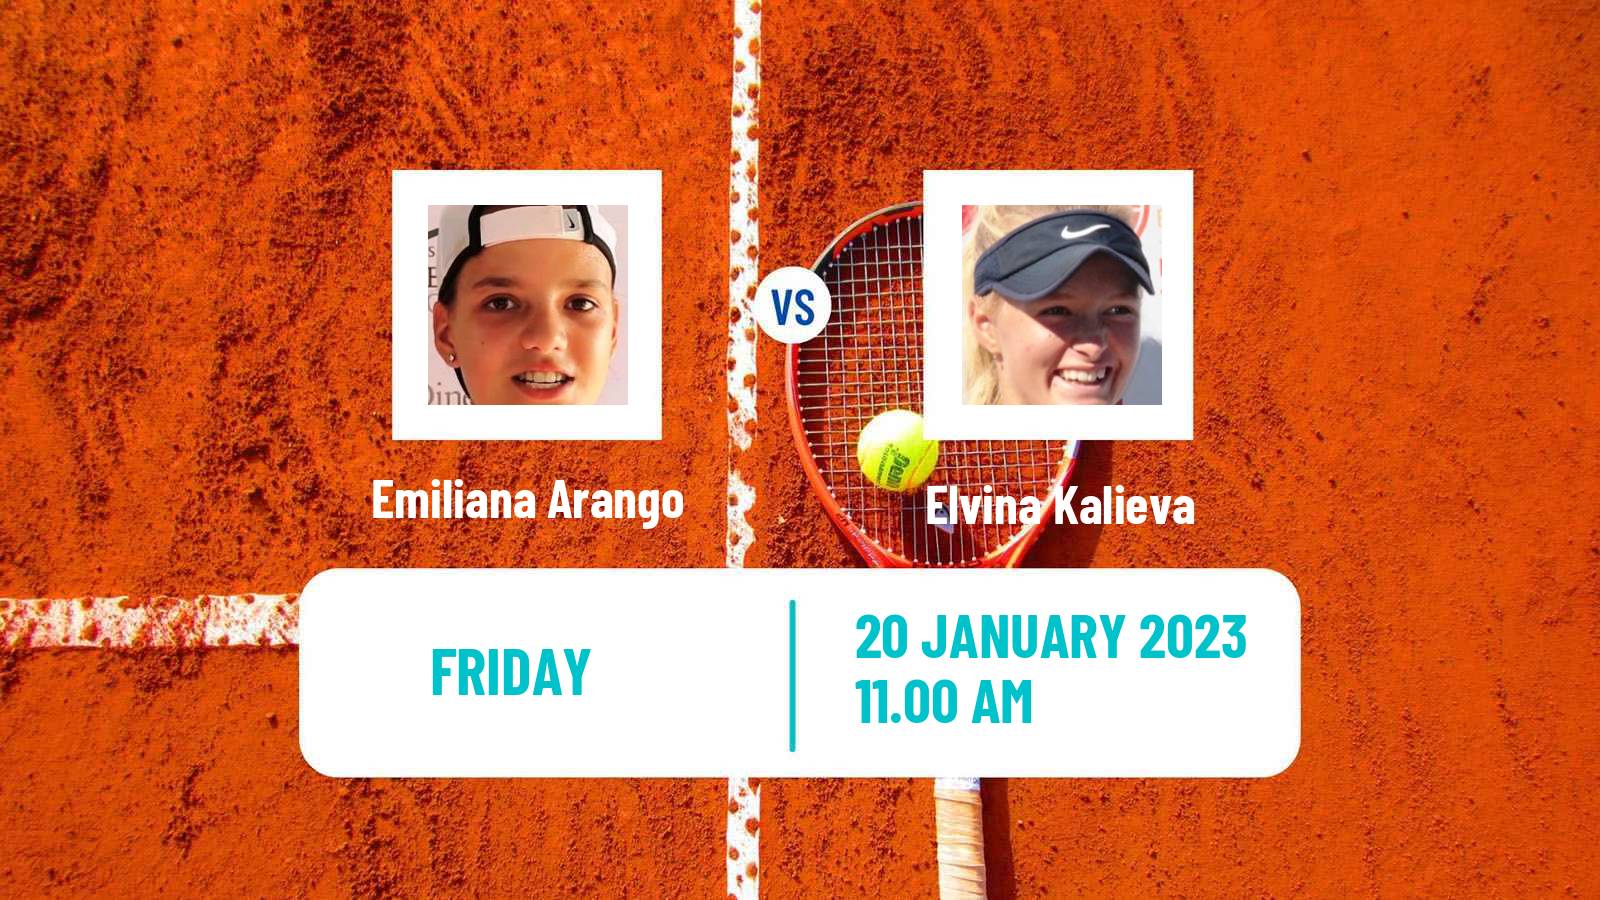 Tennis ITF Tournaments Emiliana Arango - Elvina Kalieva